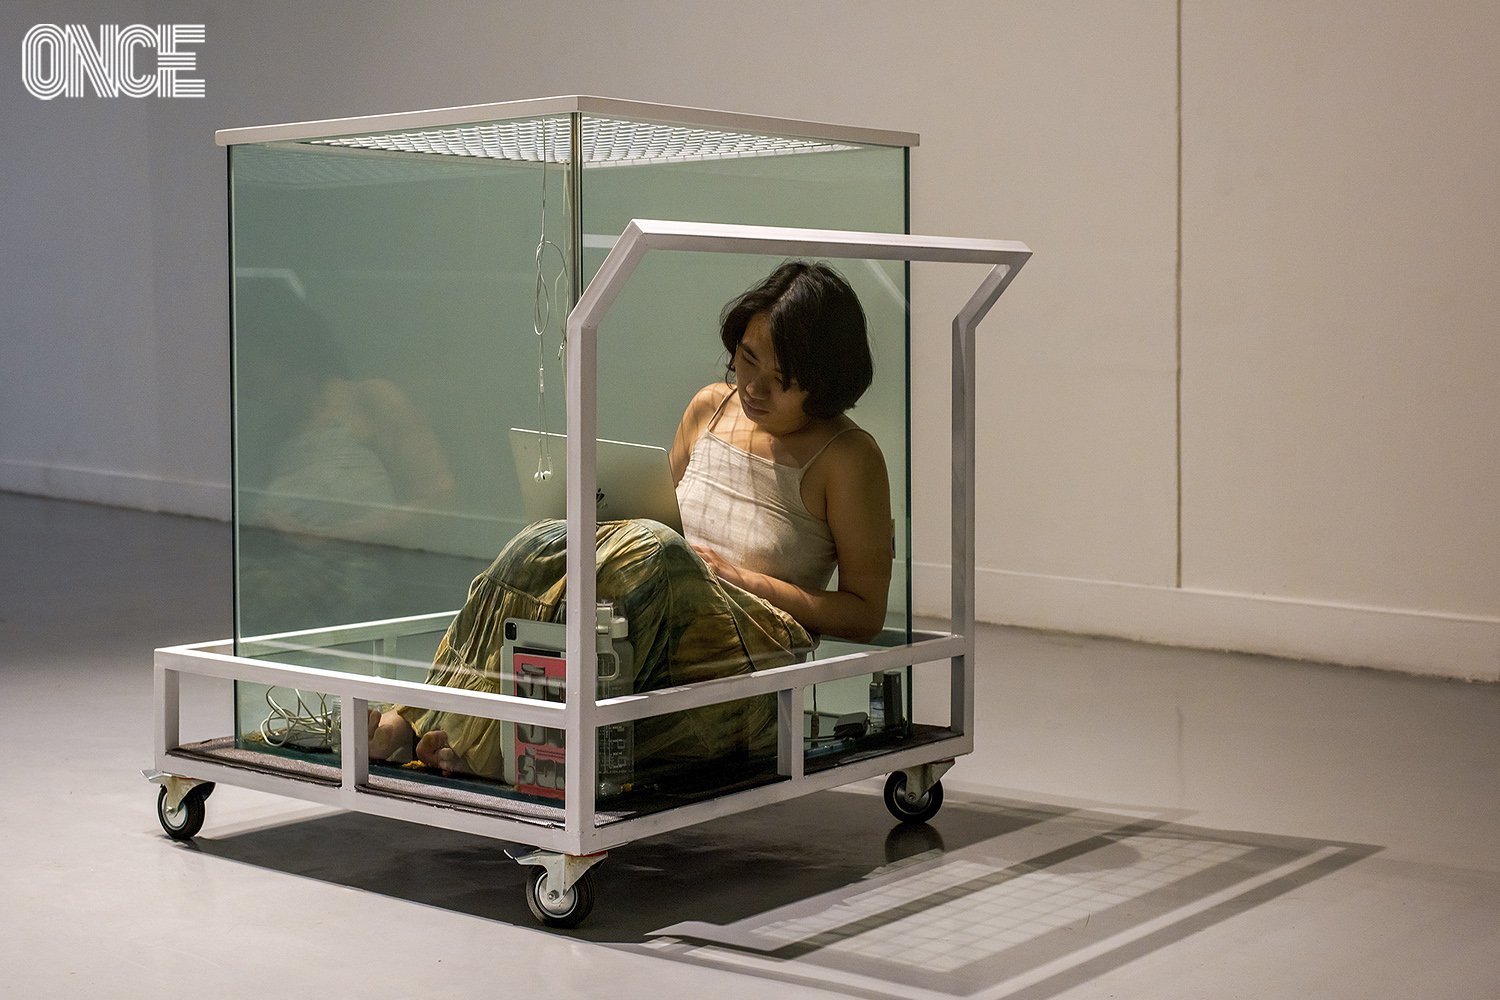 Performance Art จากน้ำอุ่น – พิชชาภา ห้องทดลองในกระจกสะท้อนชีวิต คนรุ่นใหม่ในโลกทุนนิยม